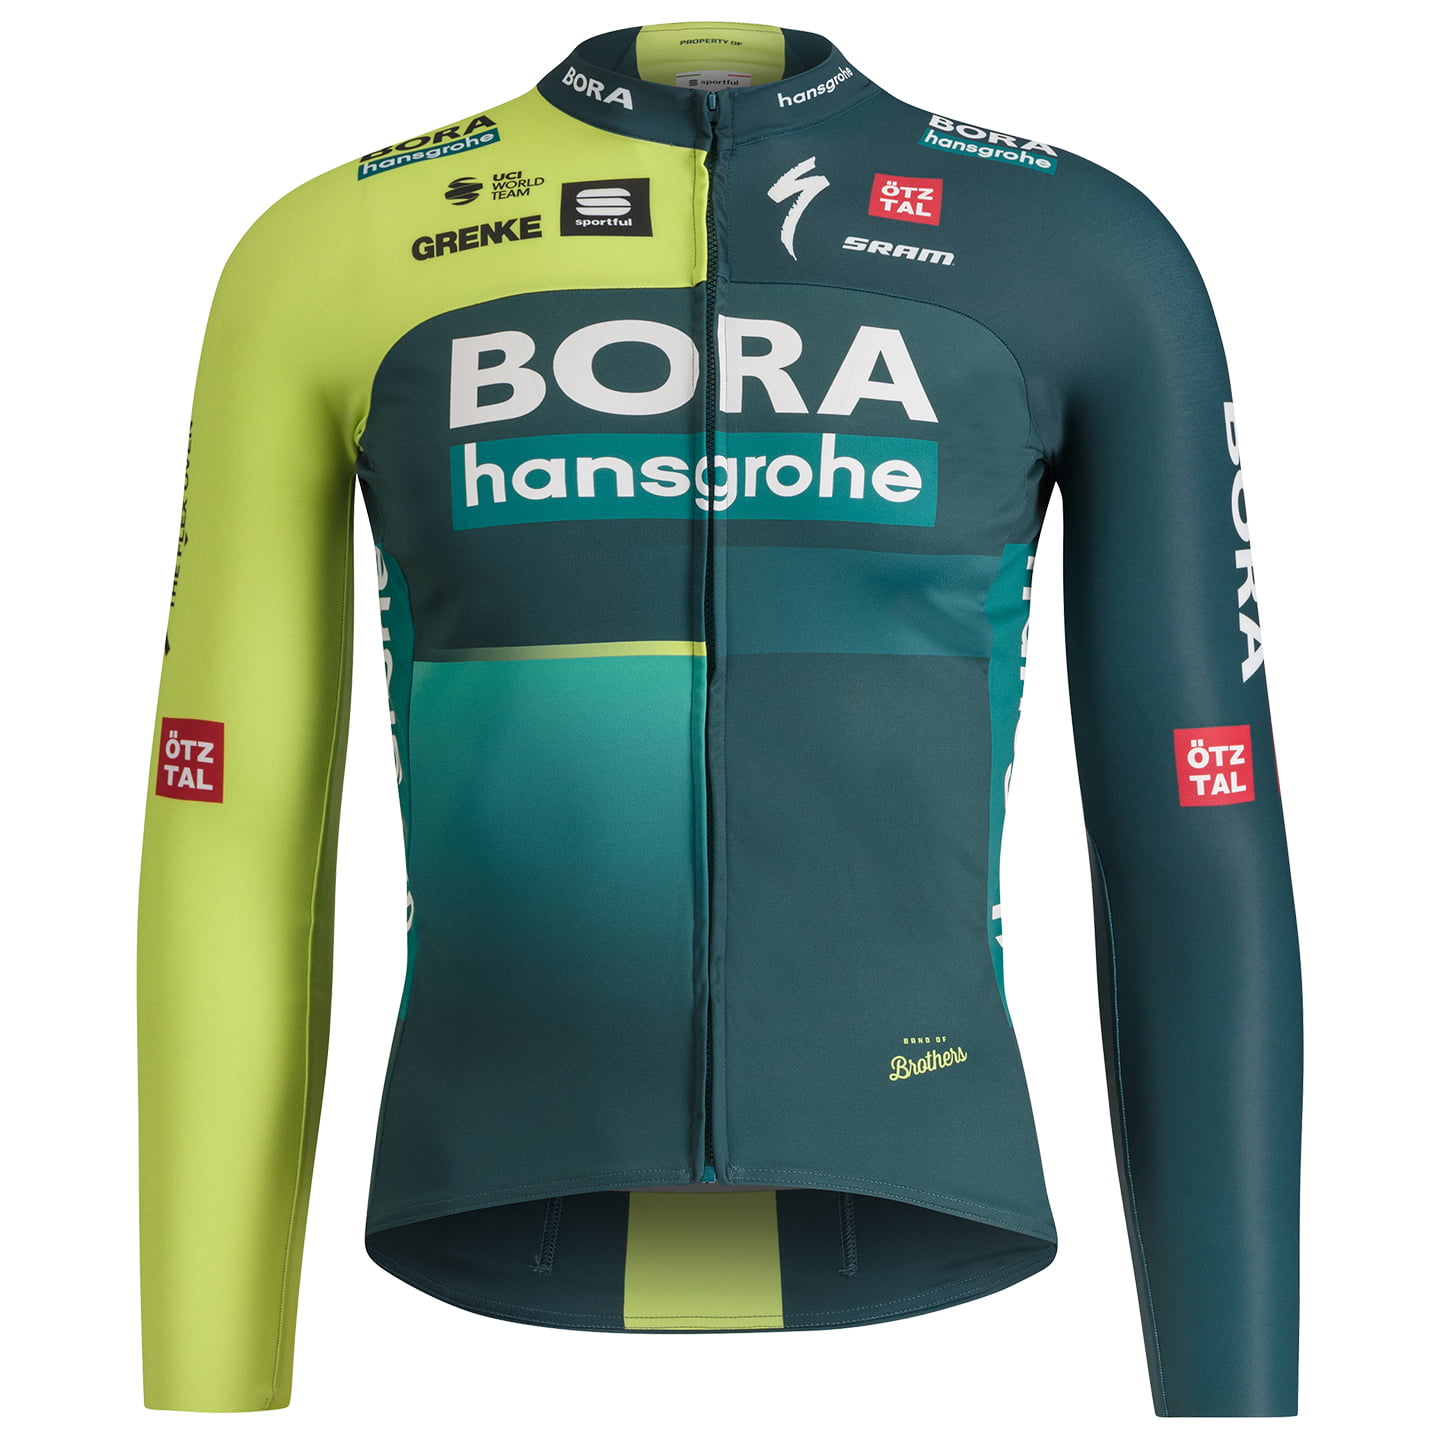 BORA-hansgrohe 2024 Long Sleeve Jersey, for men, size 3XL, Bike shirt, Cycling gear